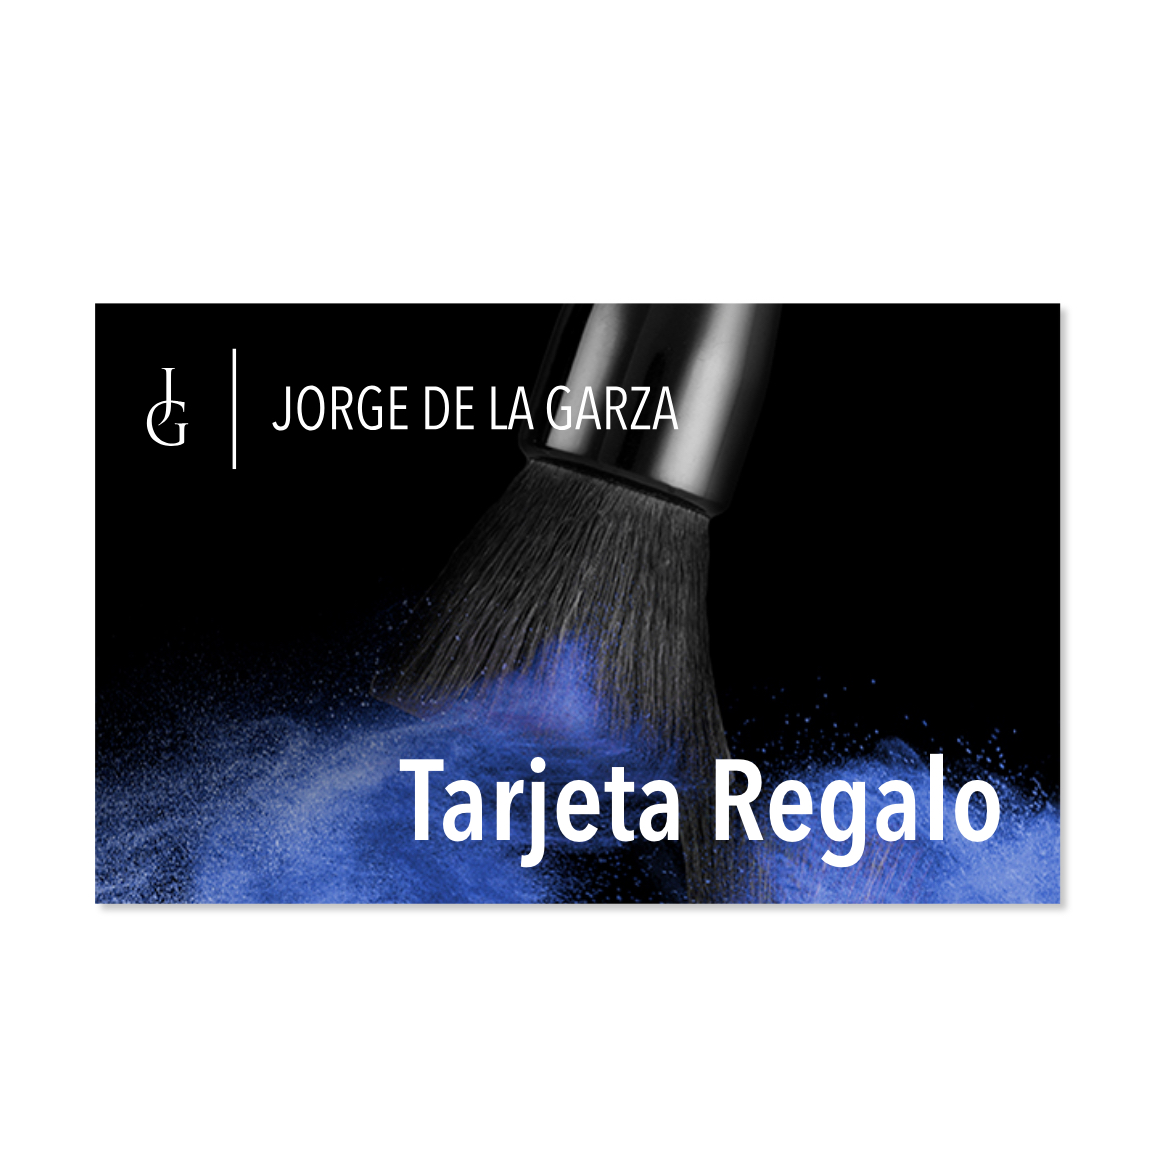 Tarjeta Regalo | Jorge de la Garza Make Up